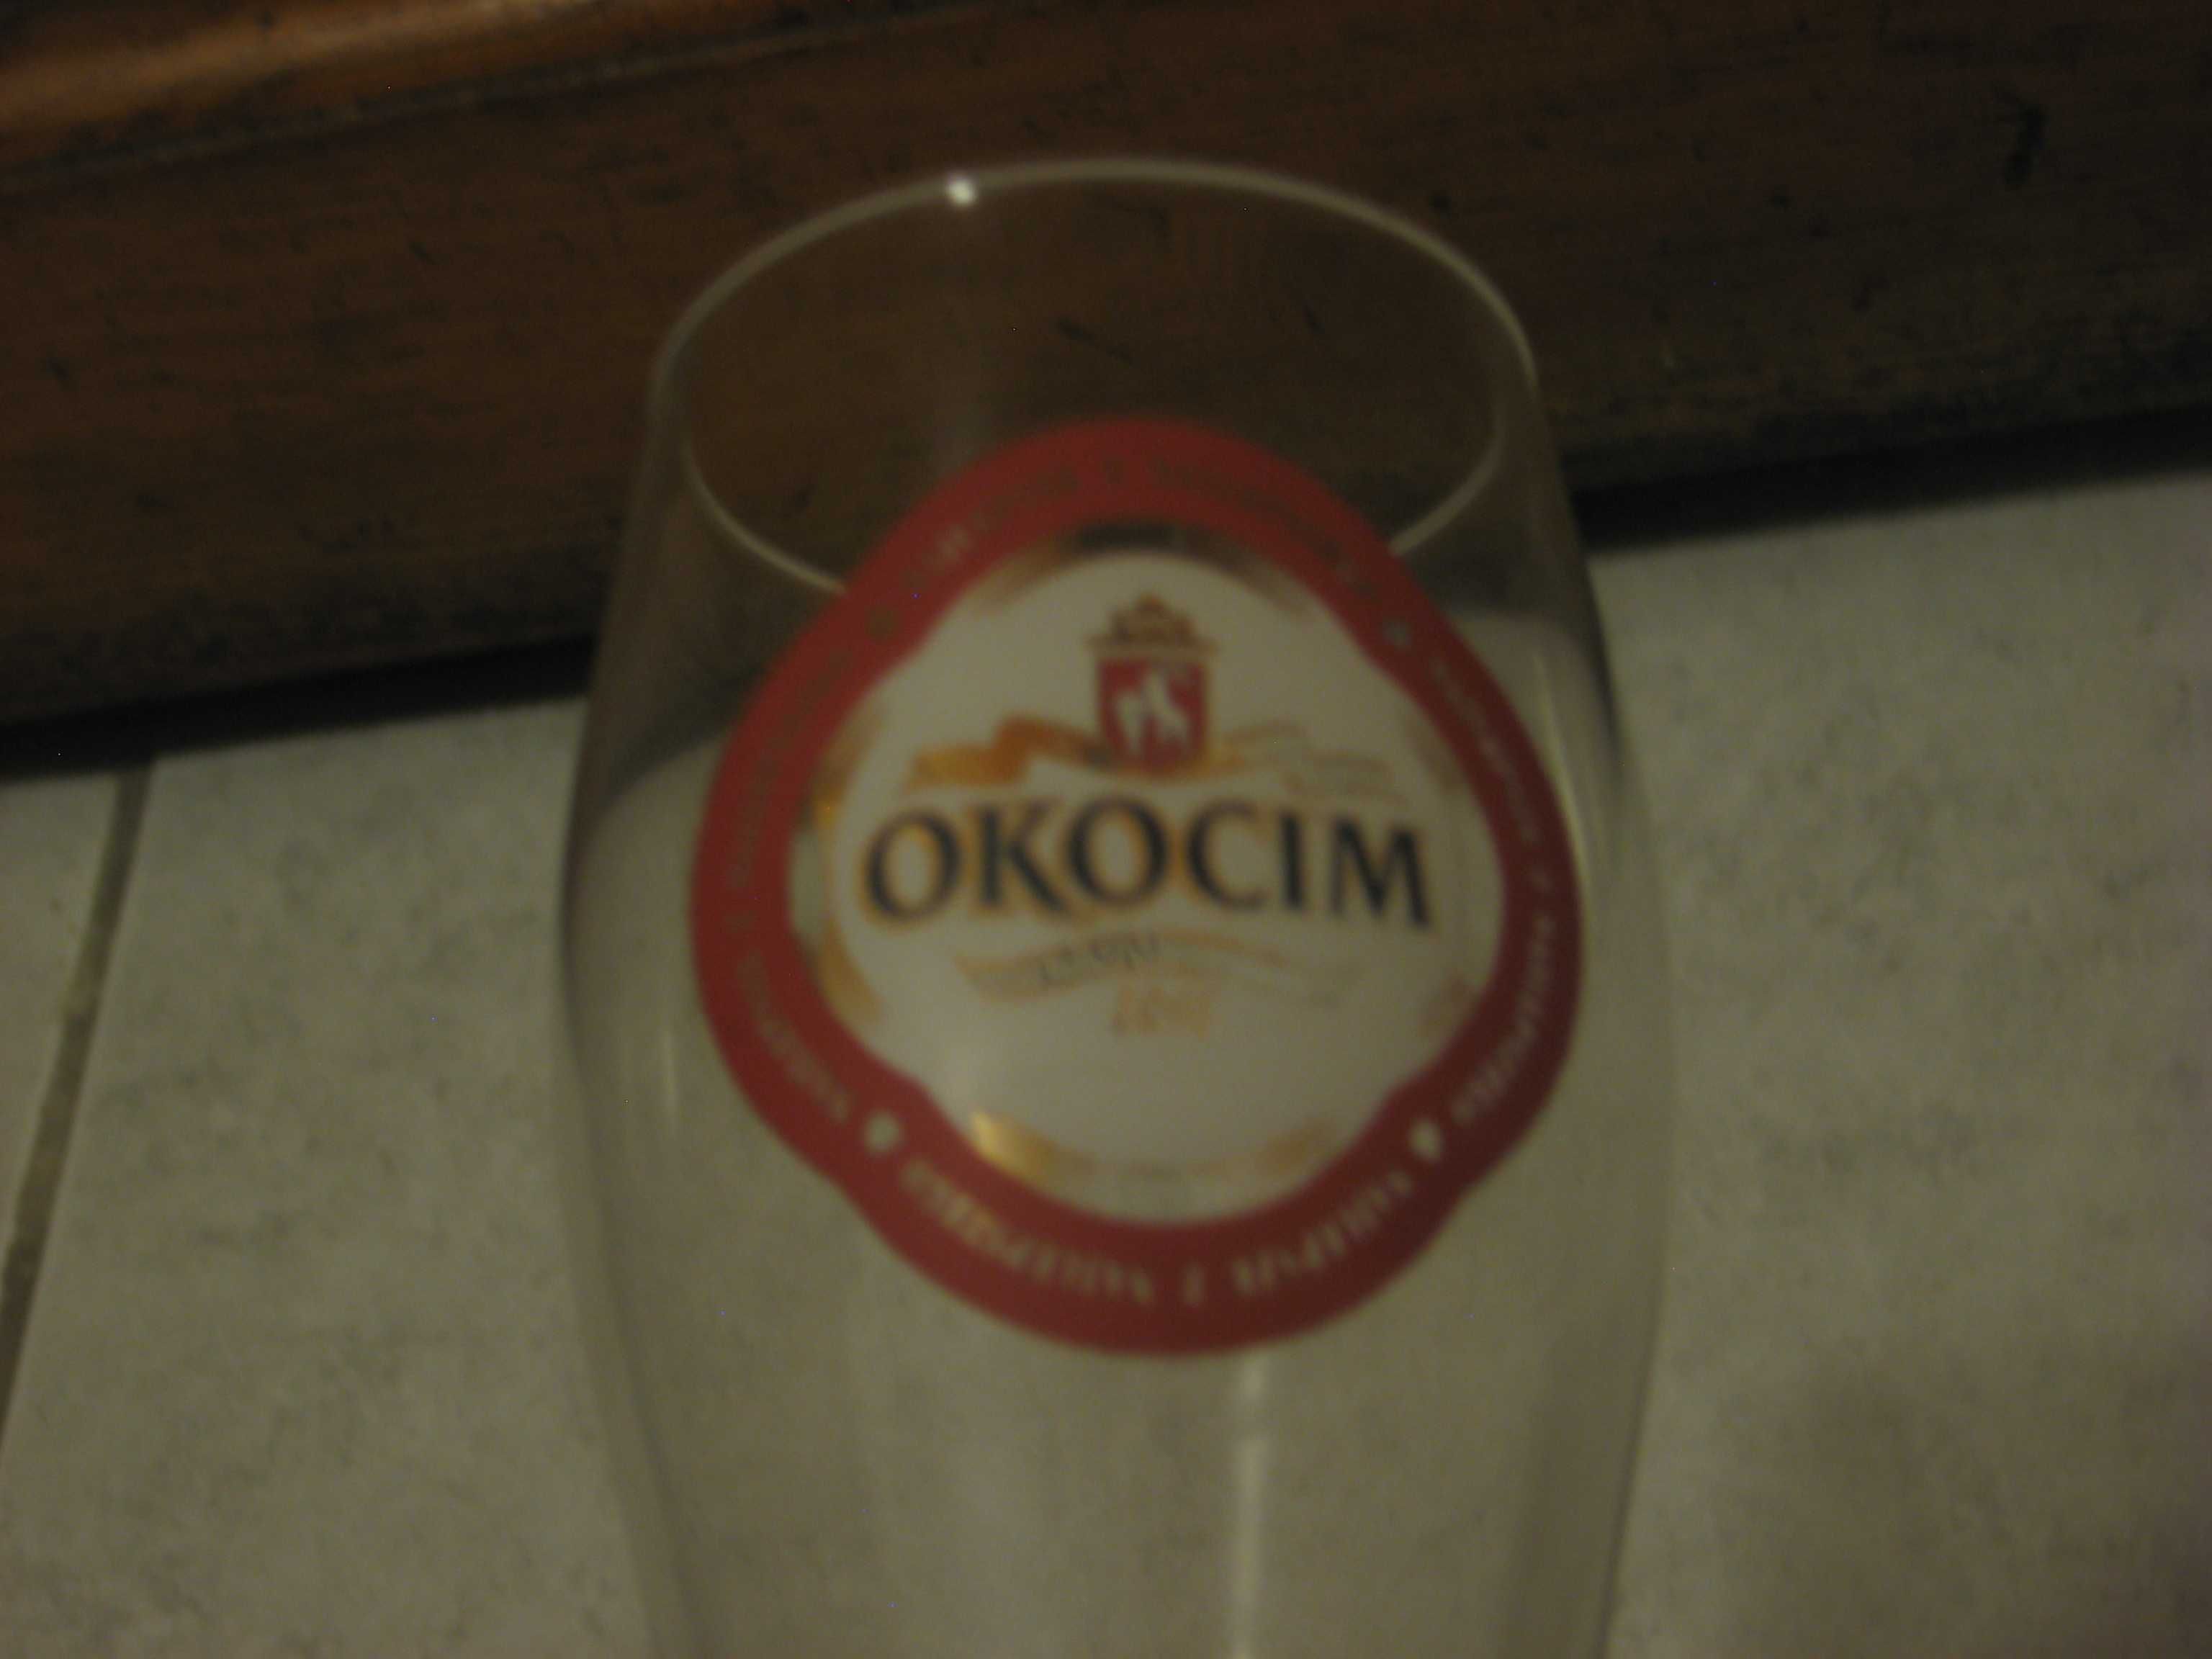 Szklanka Okocim kolekcjonerska ozdobna kolekcja kufel nietypowa